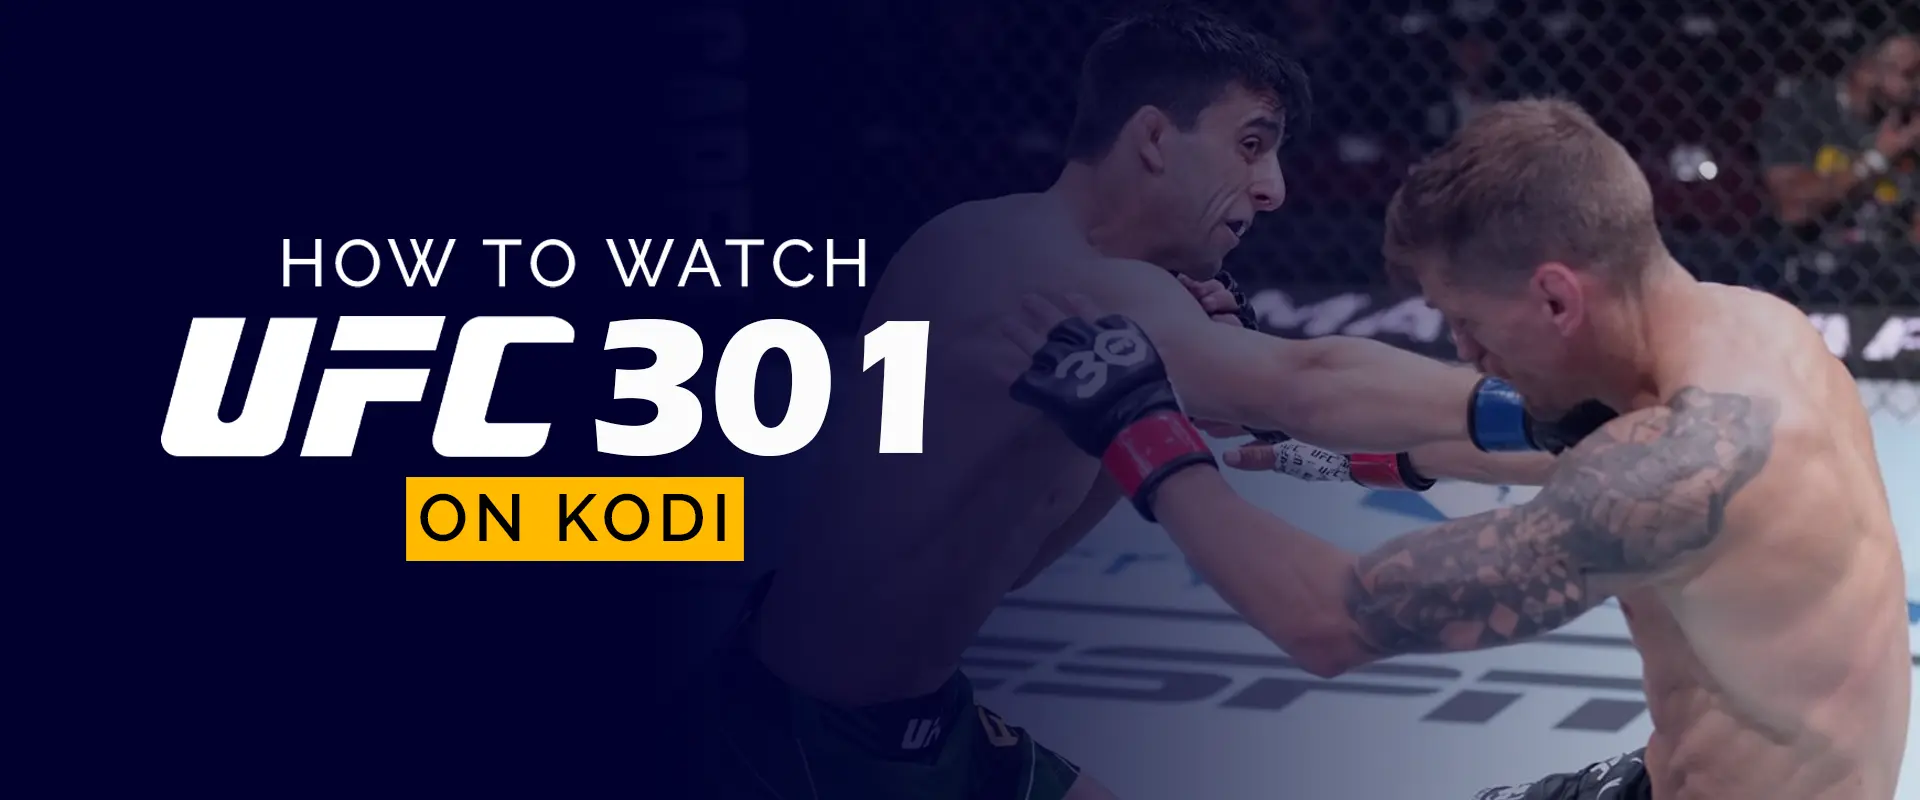 Kodi'de UFC-301 Nasıl İzlenir